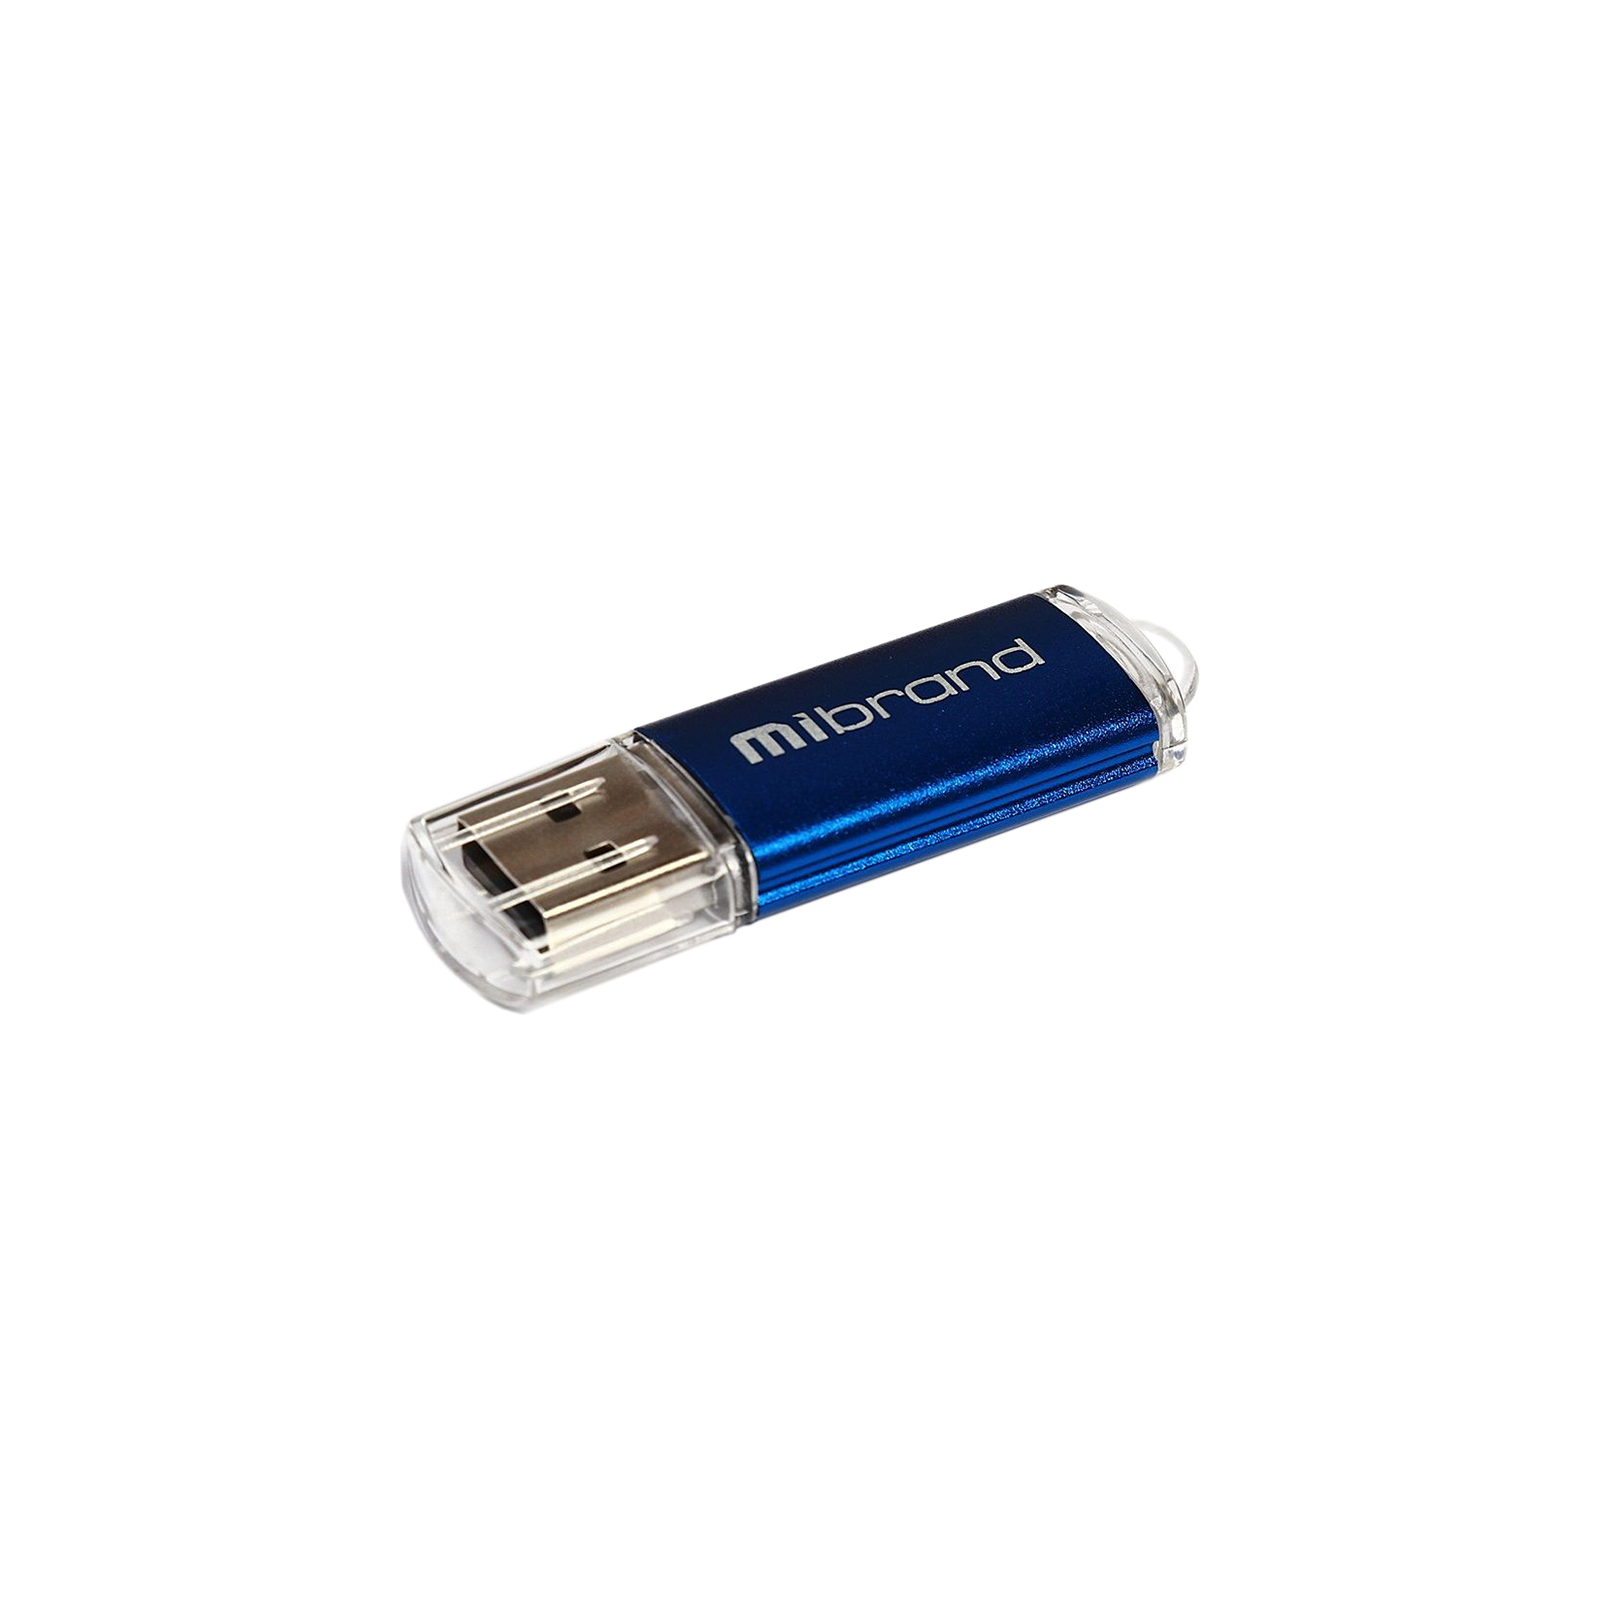 USB флеш накопитель Mibrand 4GB Cougar Blue USB 2.0 (MI2.0/CU4P1U)